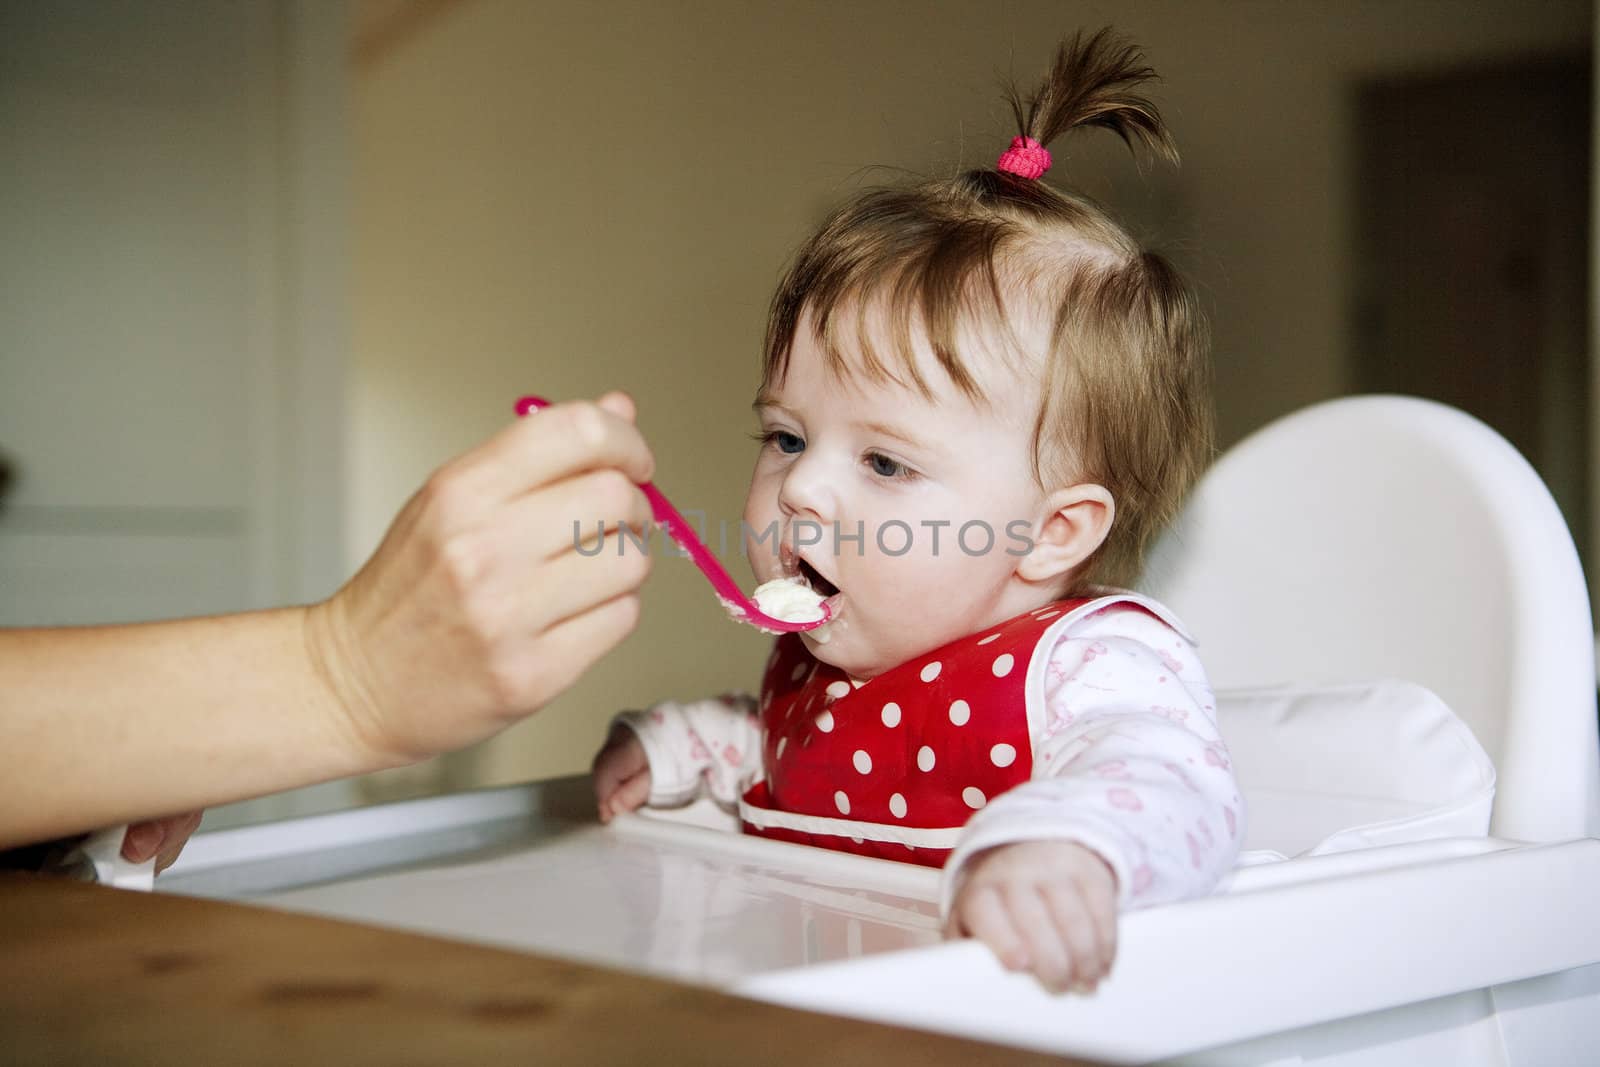 Baby Girl eating by gemenacom